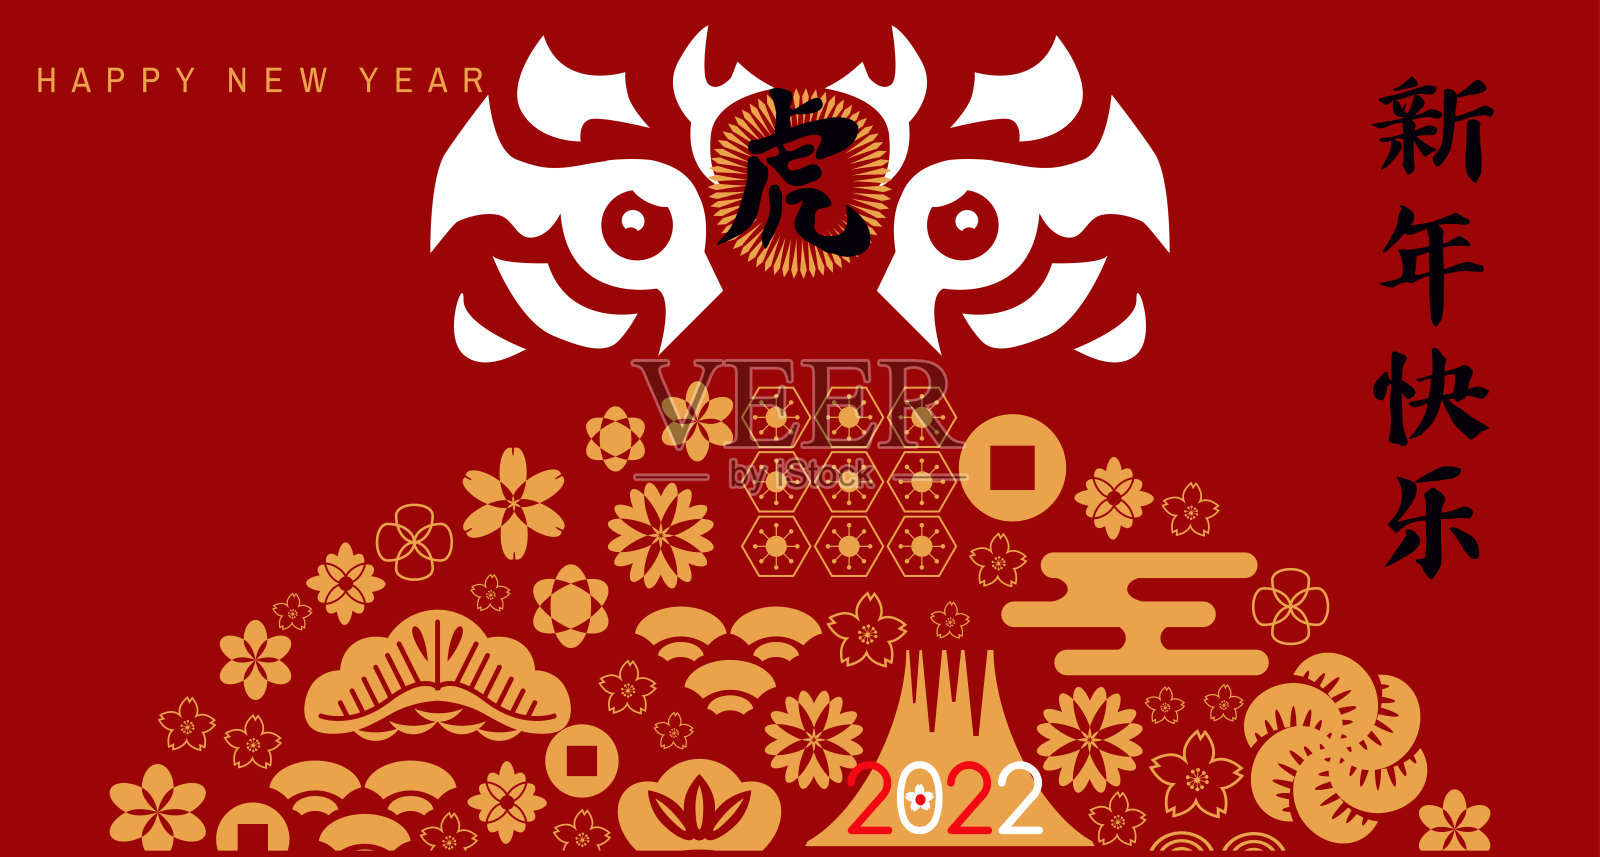 祝中国2022年虎年新年快乐。设计模板素材